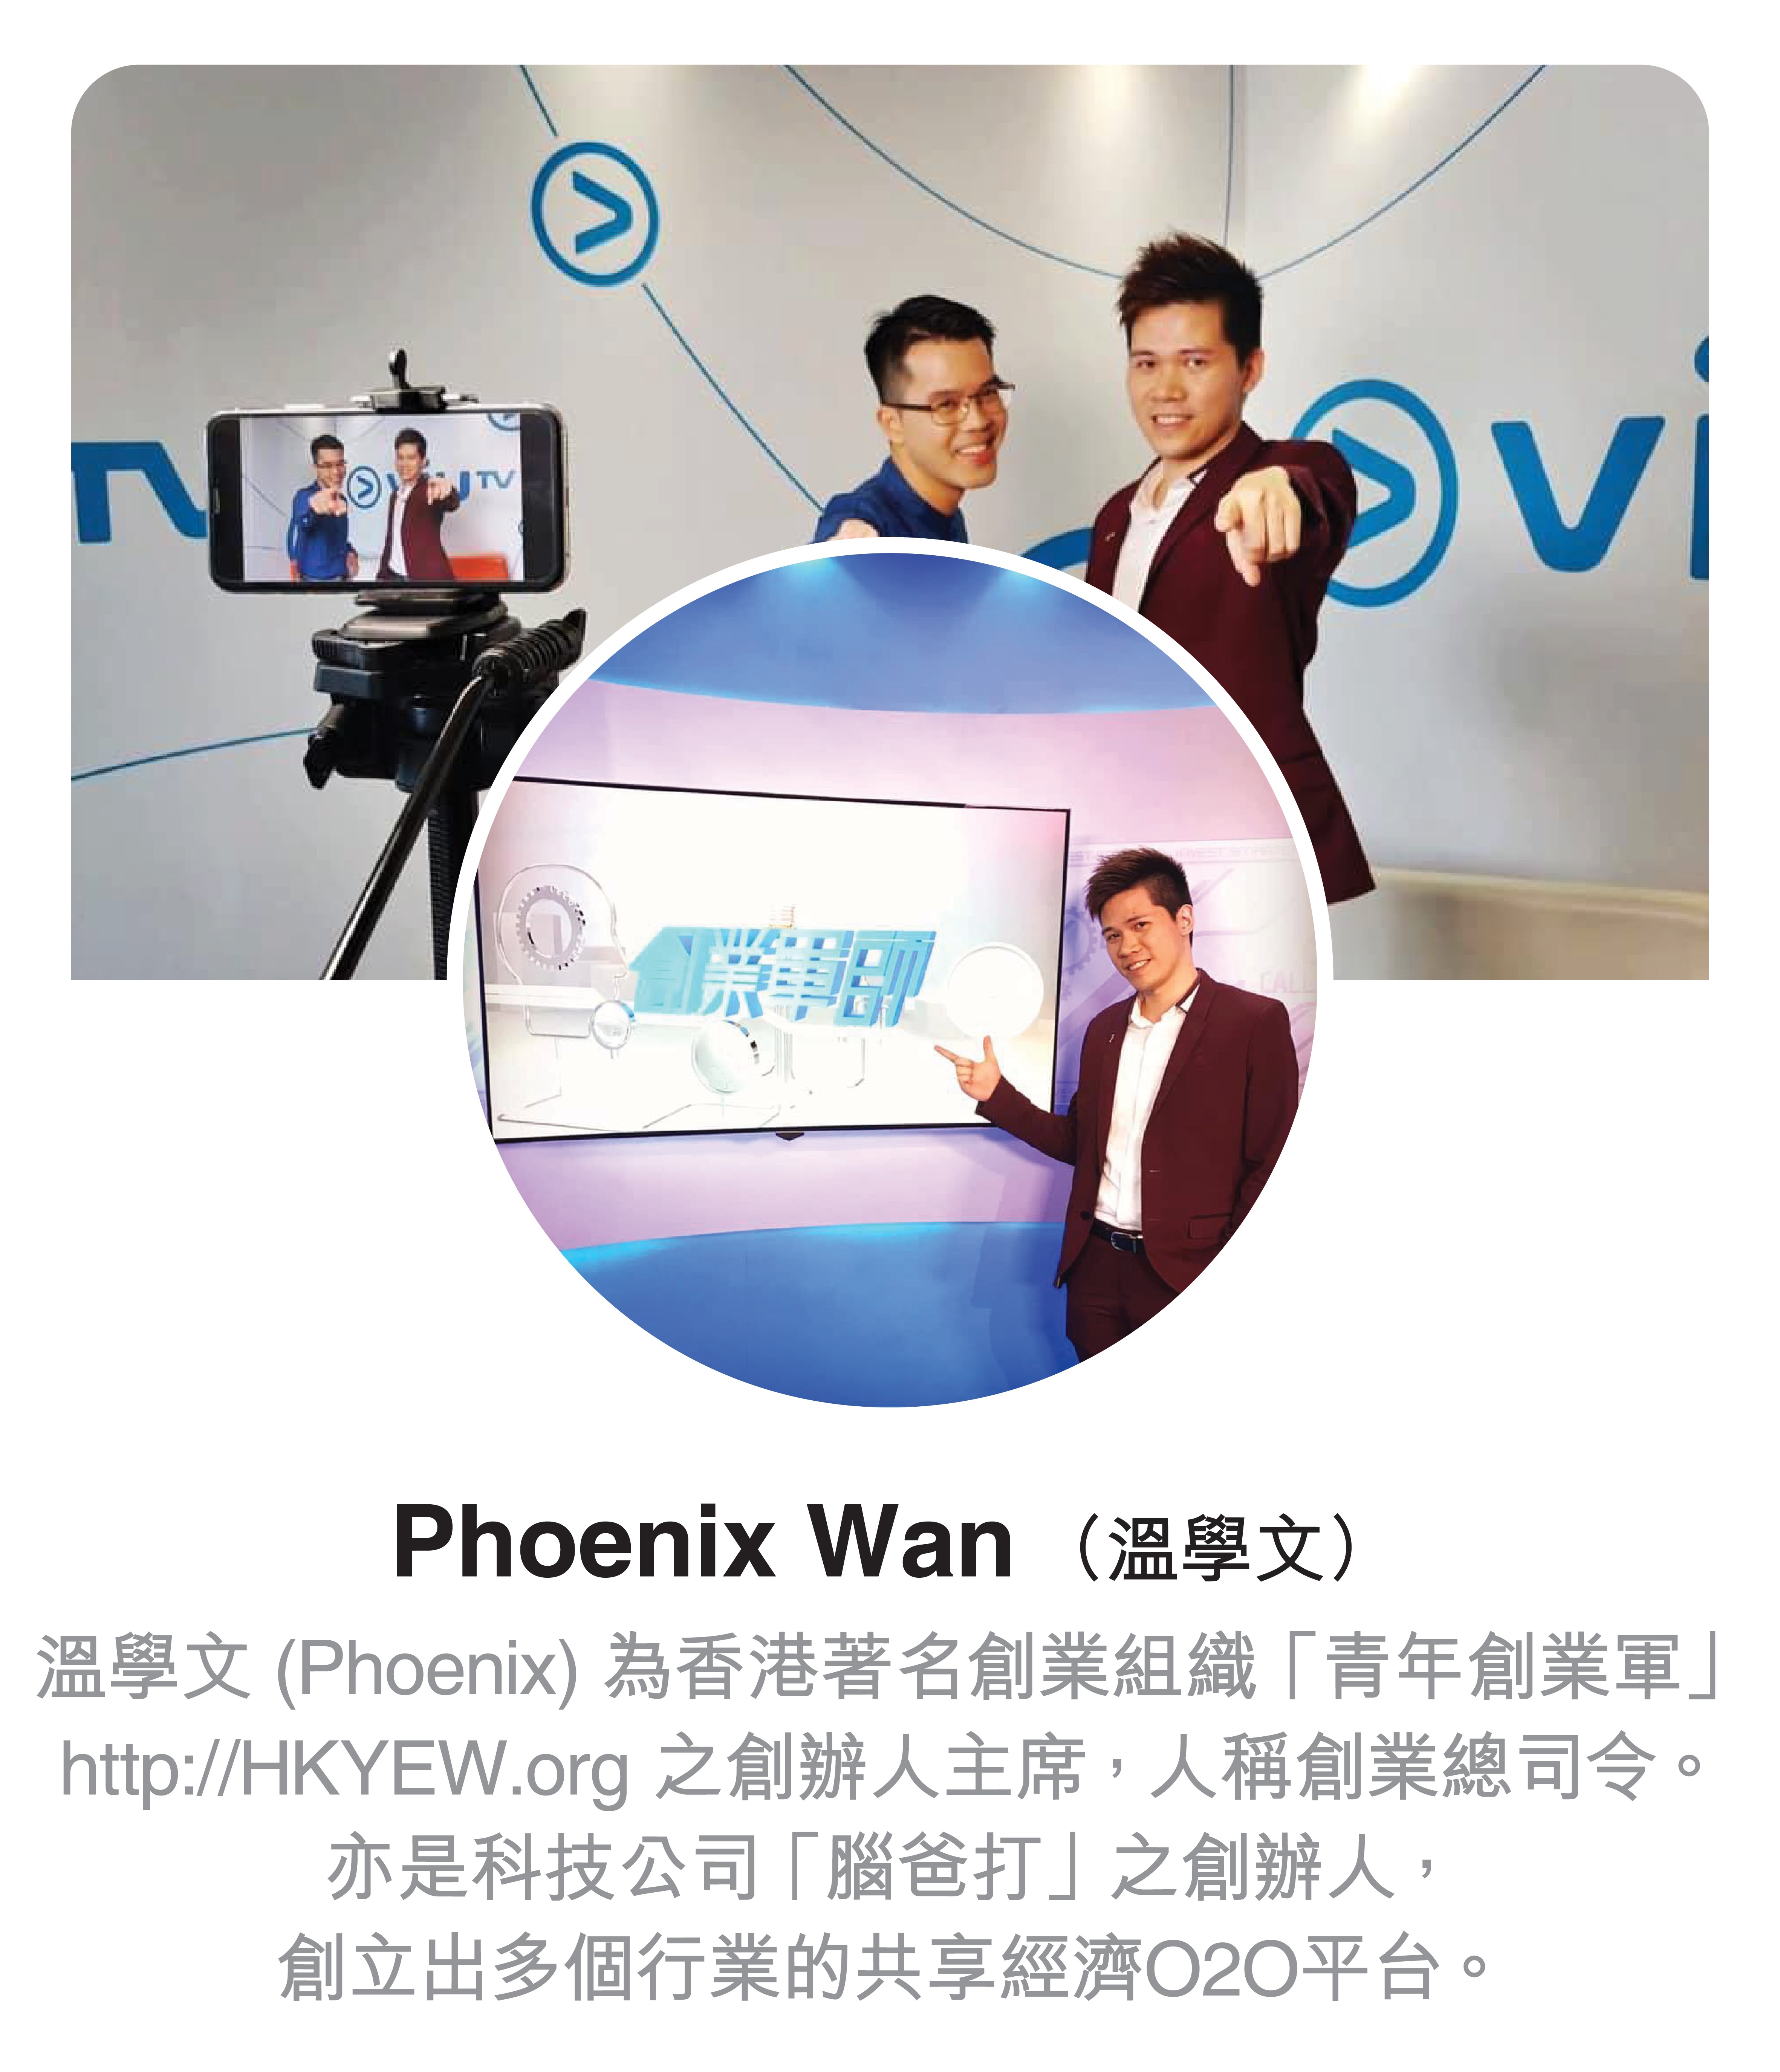 溫學文(Phoenix)為香港著名創業組織「青年創業軍」之創辦人主席，亦是科技公司「腦爸打」之創辦人。